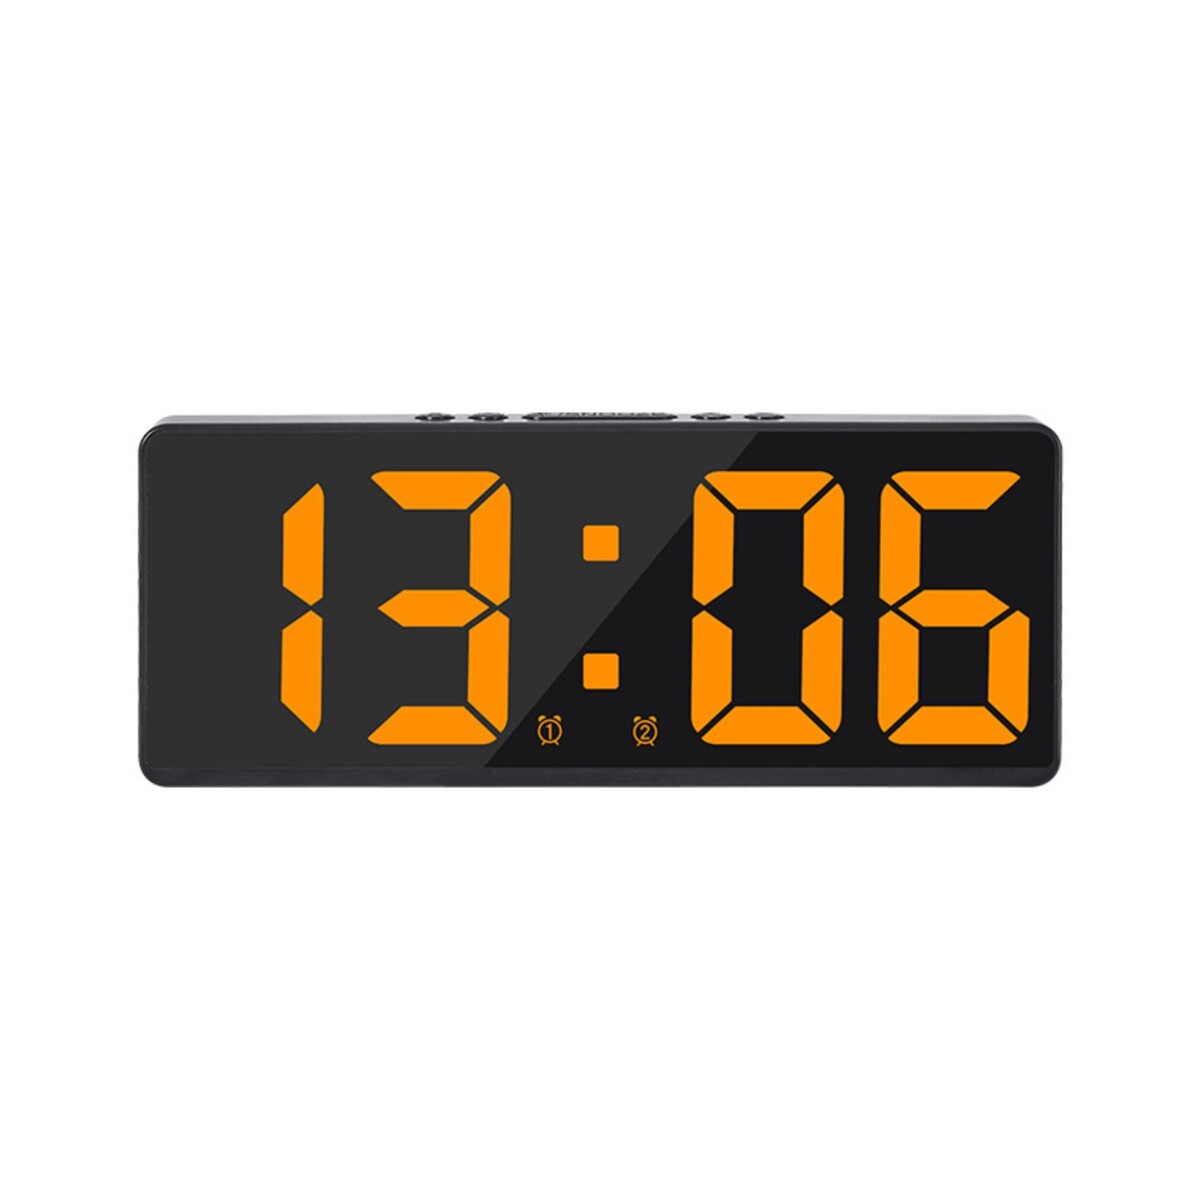 Часы - будильник электронные настольные с термометром, календарем, 15 х 6.3 см, ааа, usb часы с термометром kitfort кт 3303 1